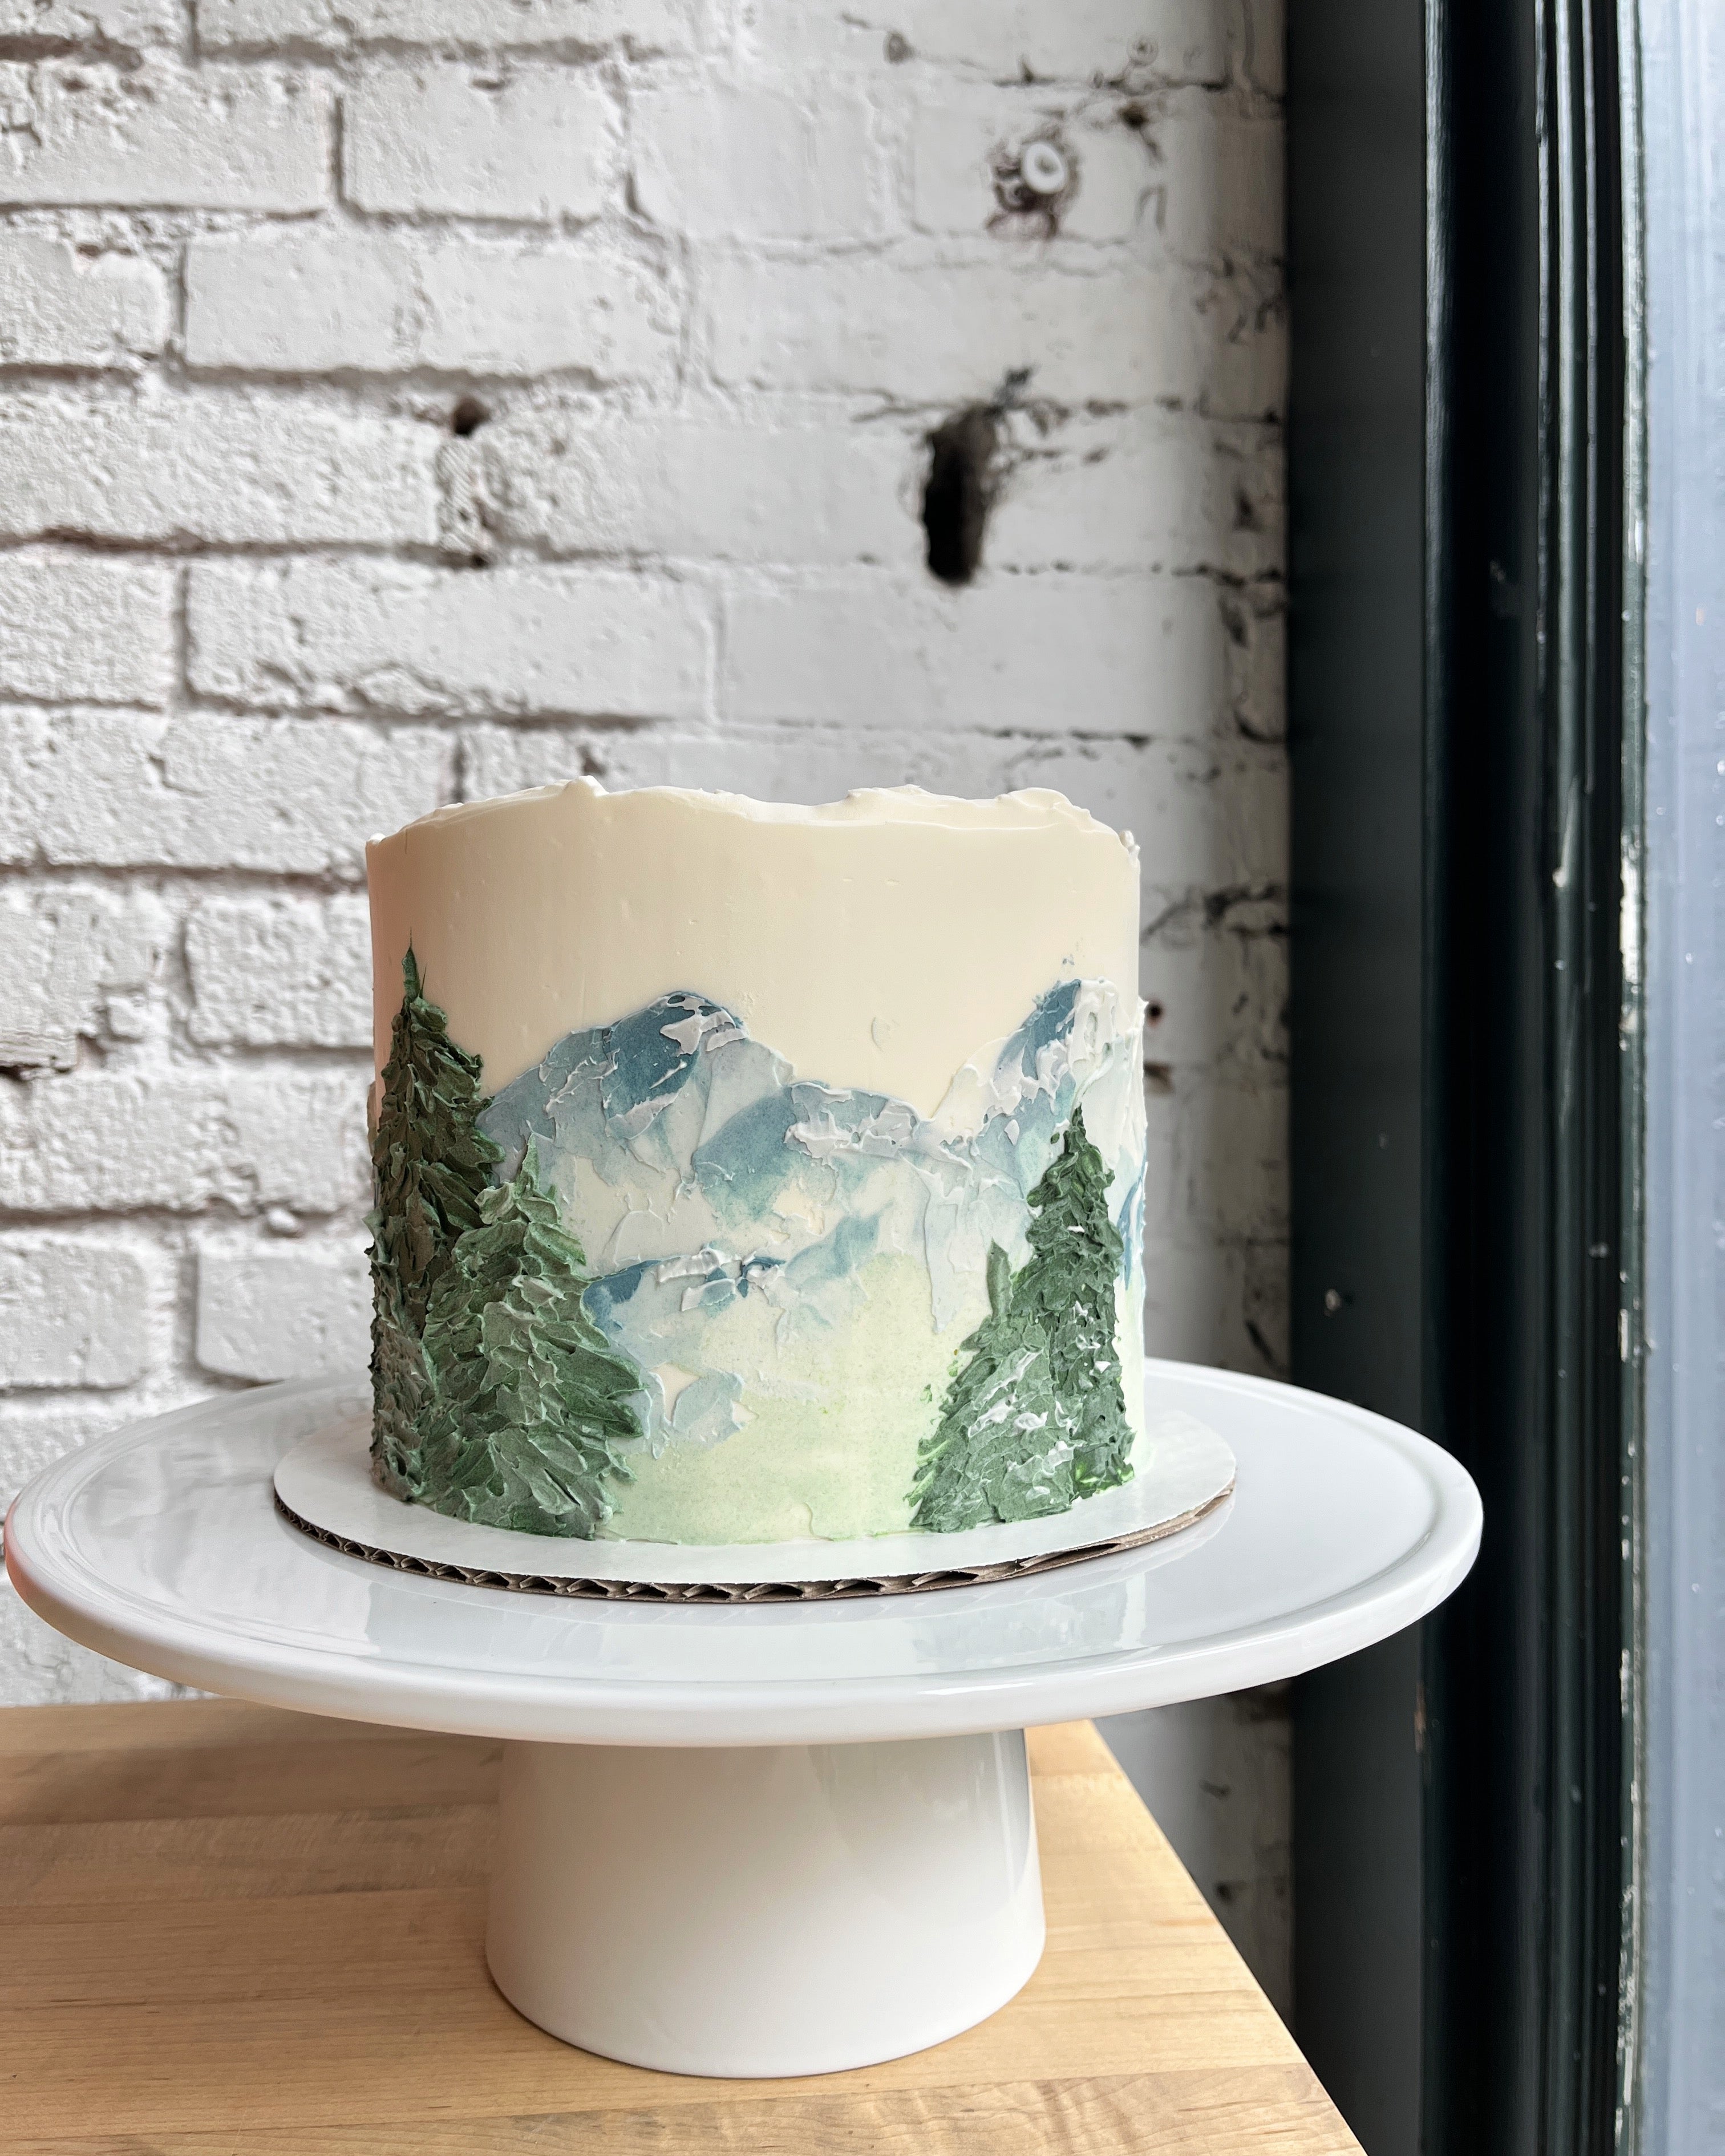 Making a mountain cake | Baking Memories